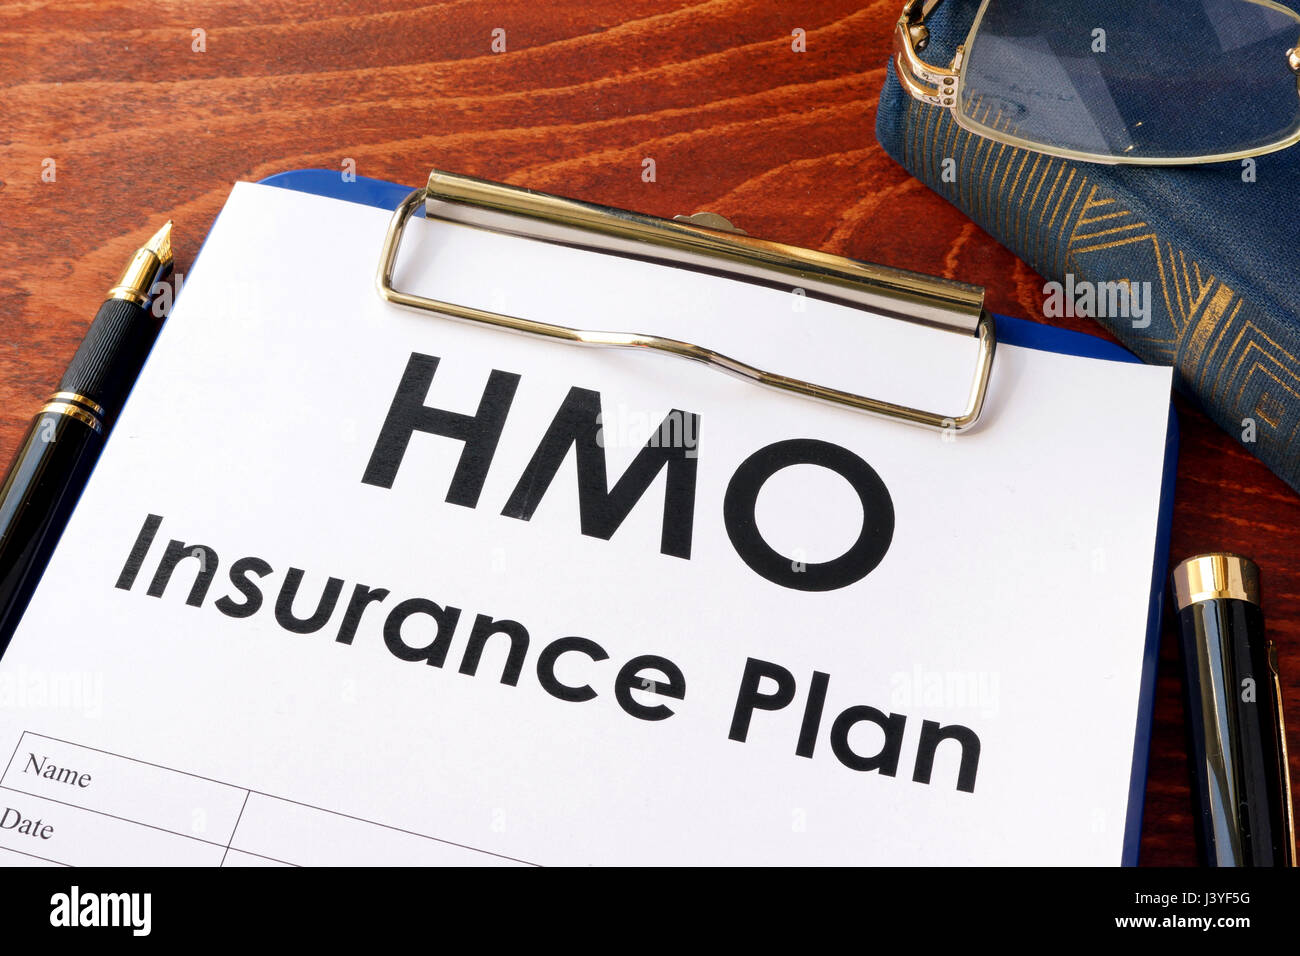 Plan d'assurance HMO sur une table. (Health Maintenance Organization) Banque D'Images